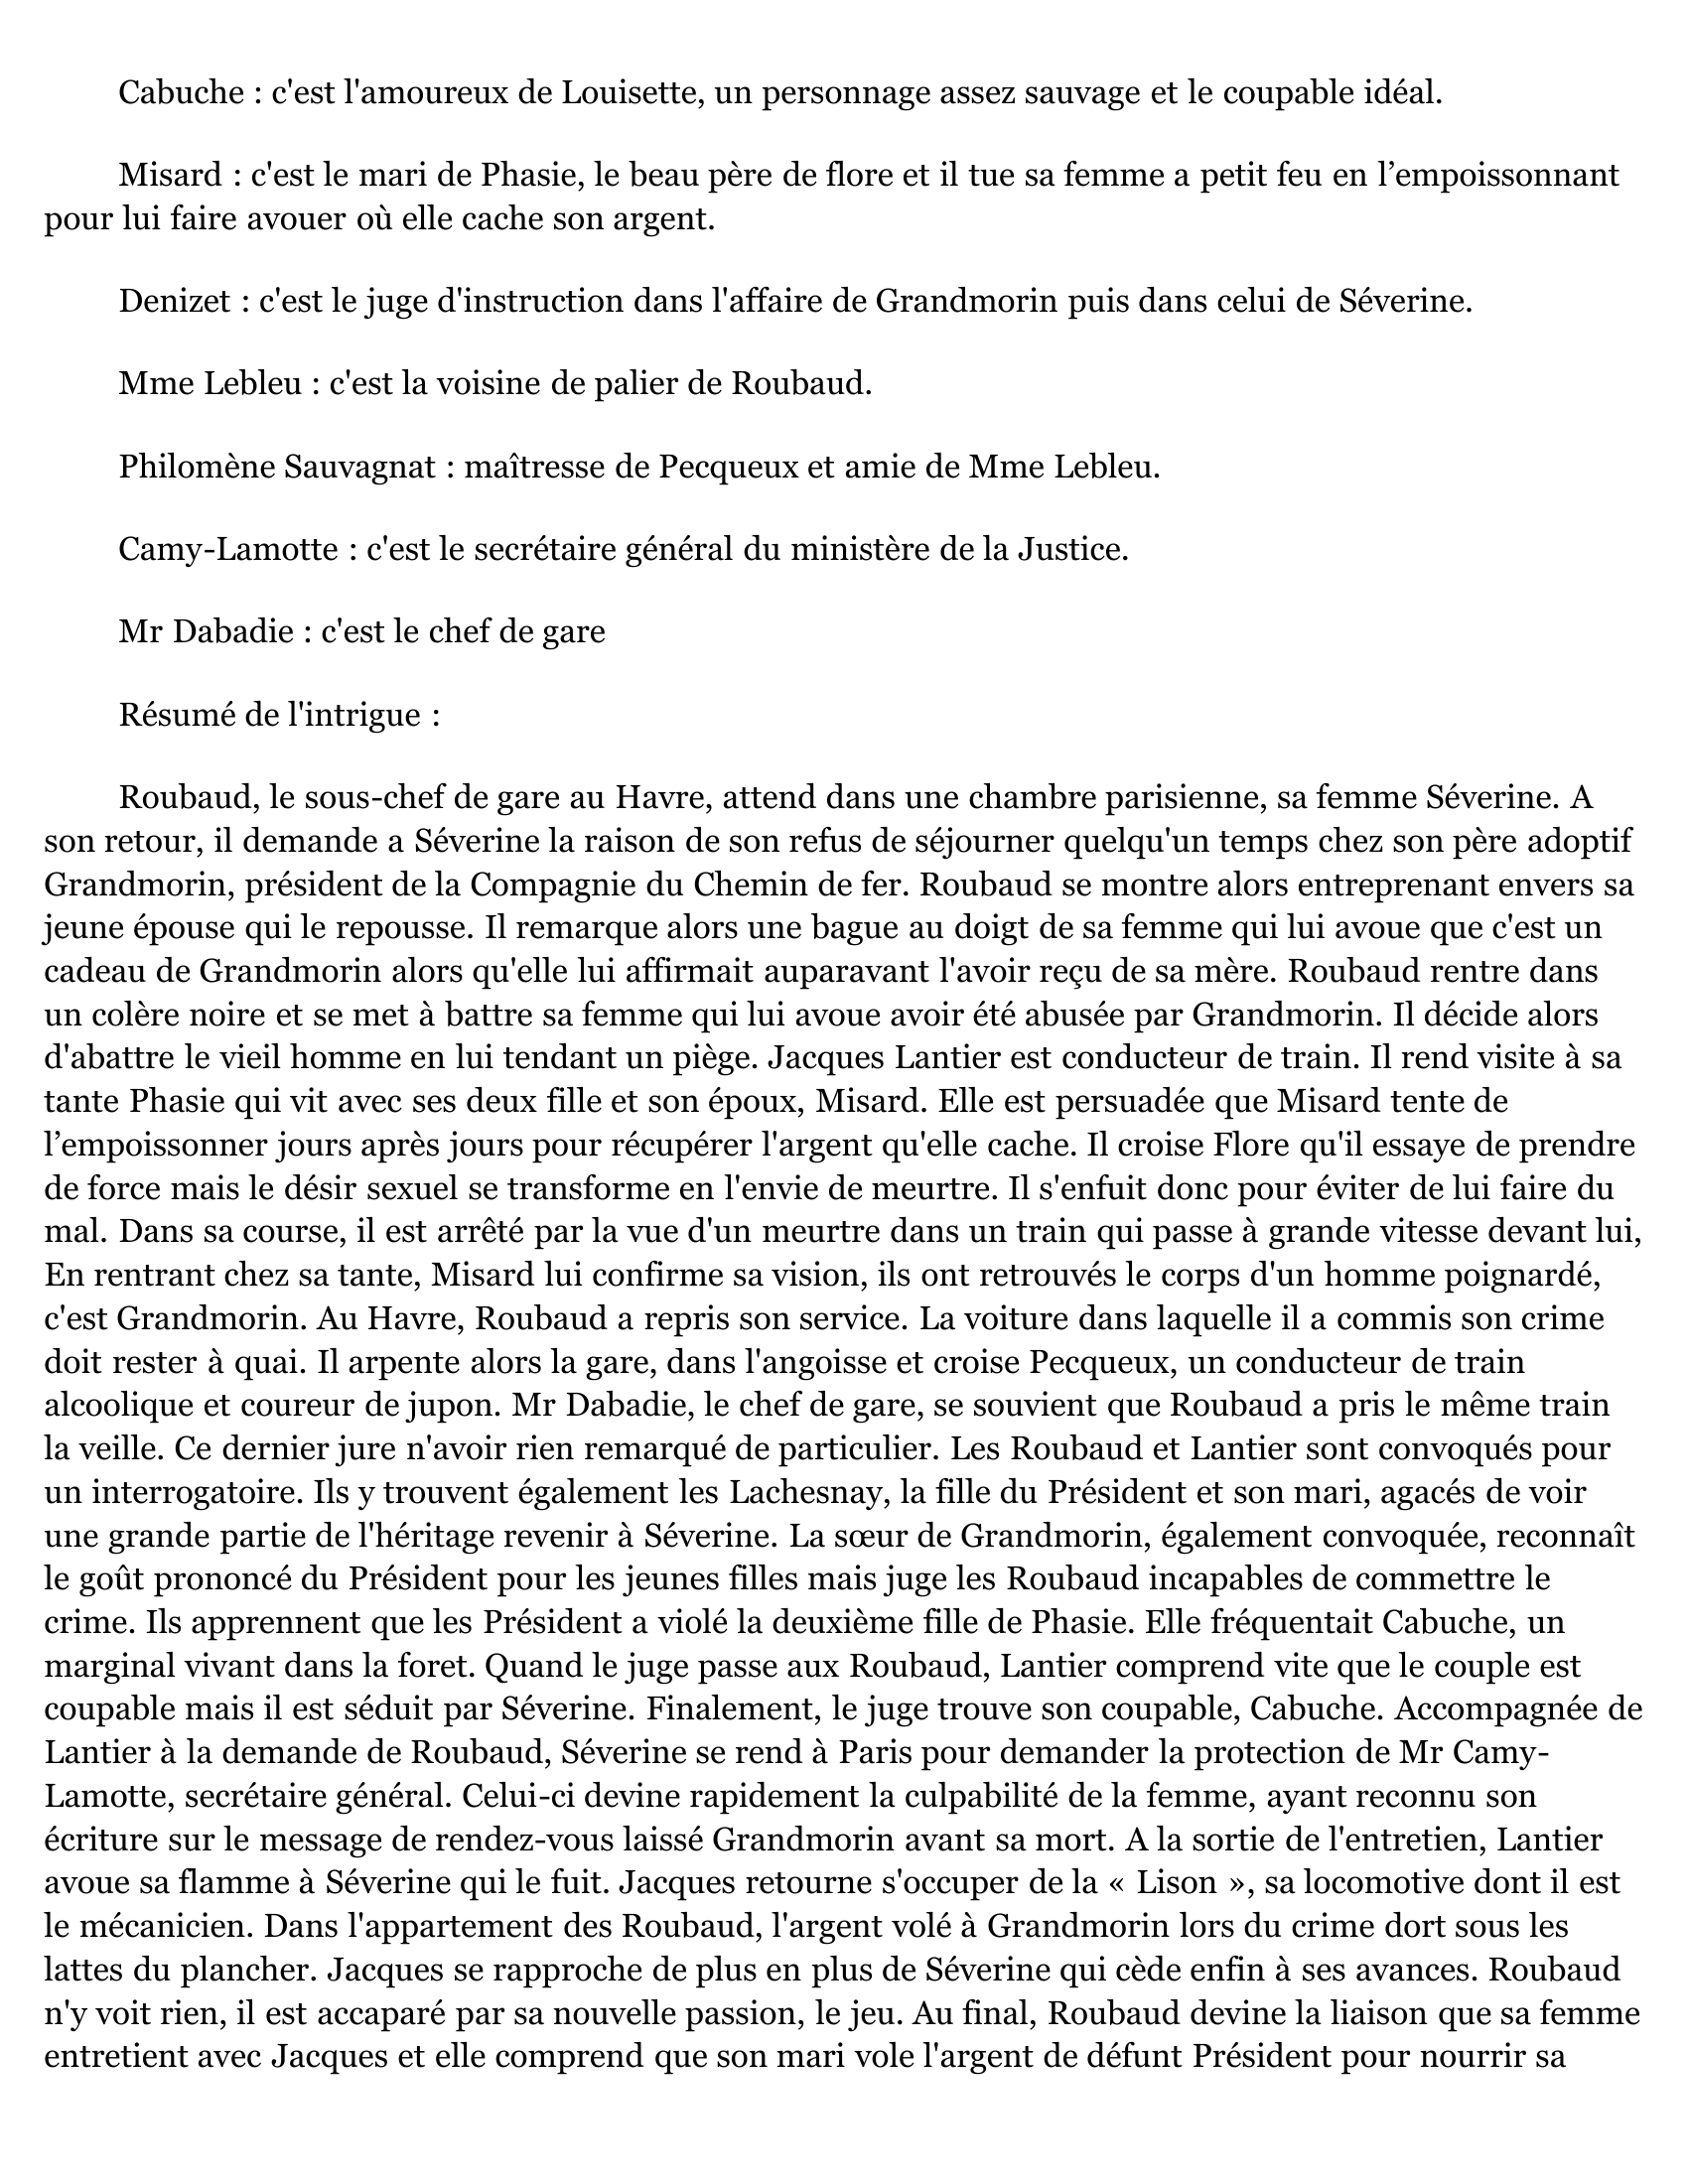 Prévisualisation du document Carnet de lecture  La Bête Humaine, Émile Zola